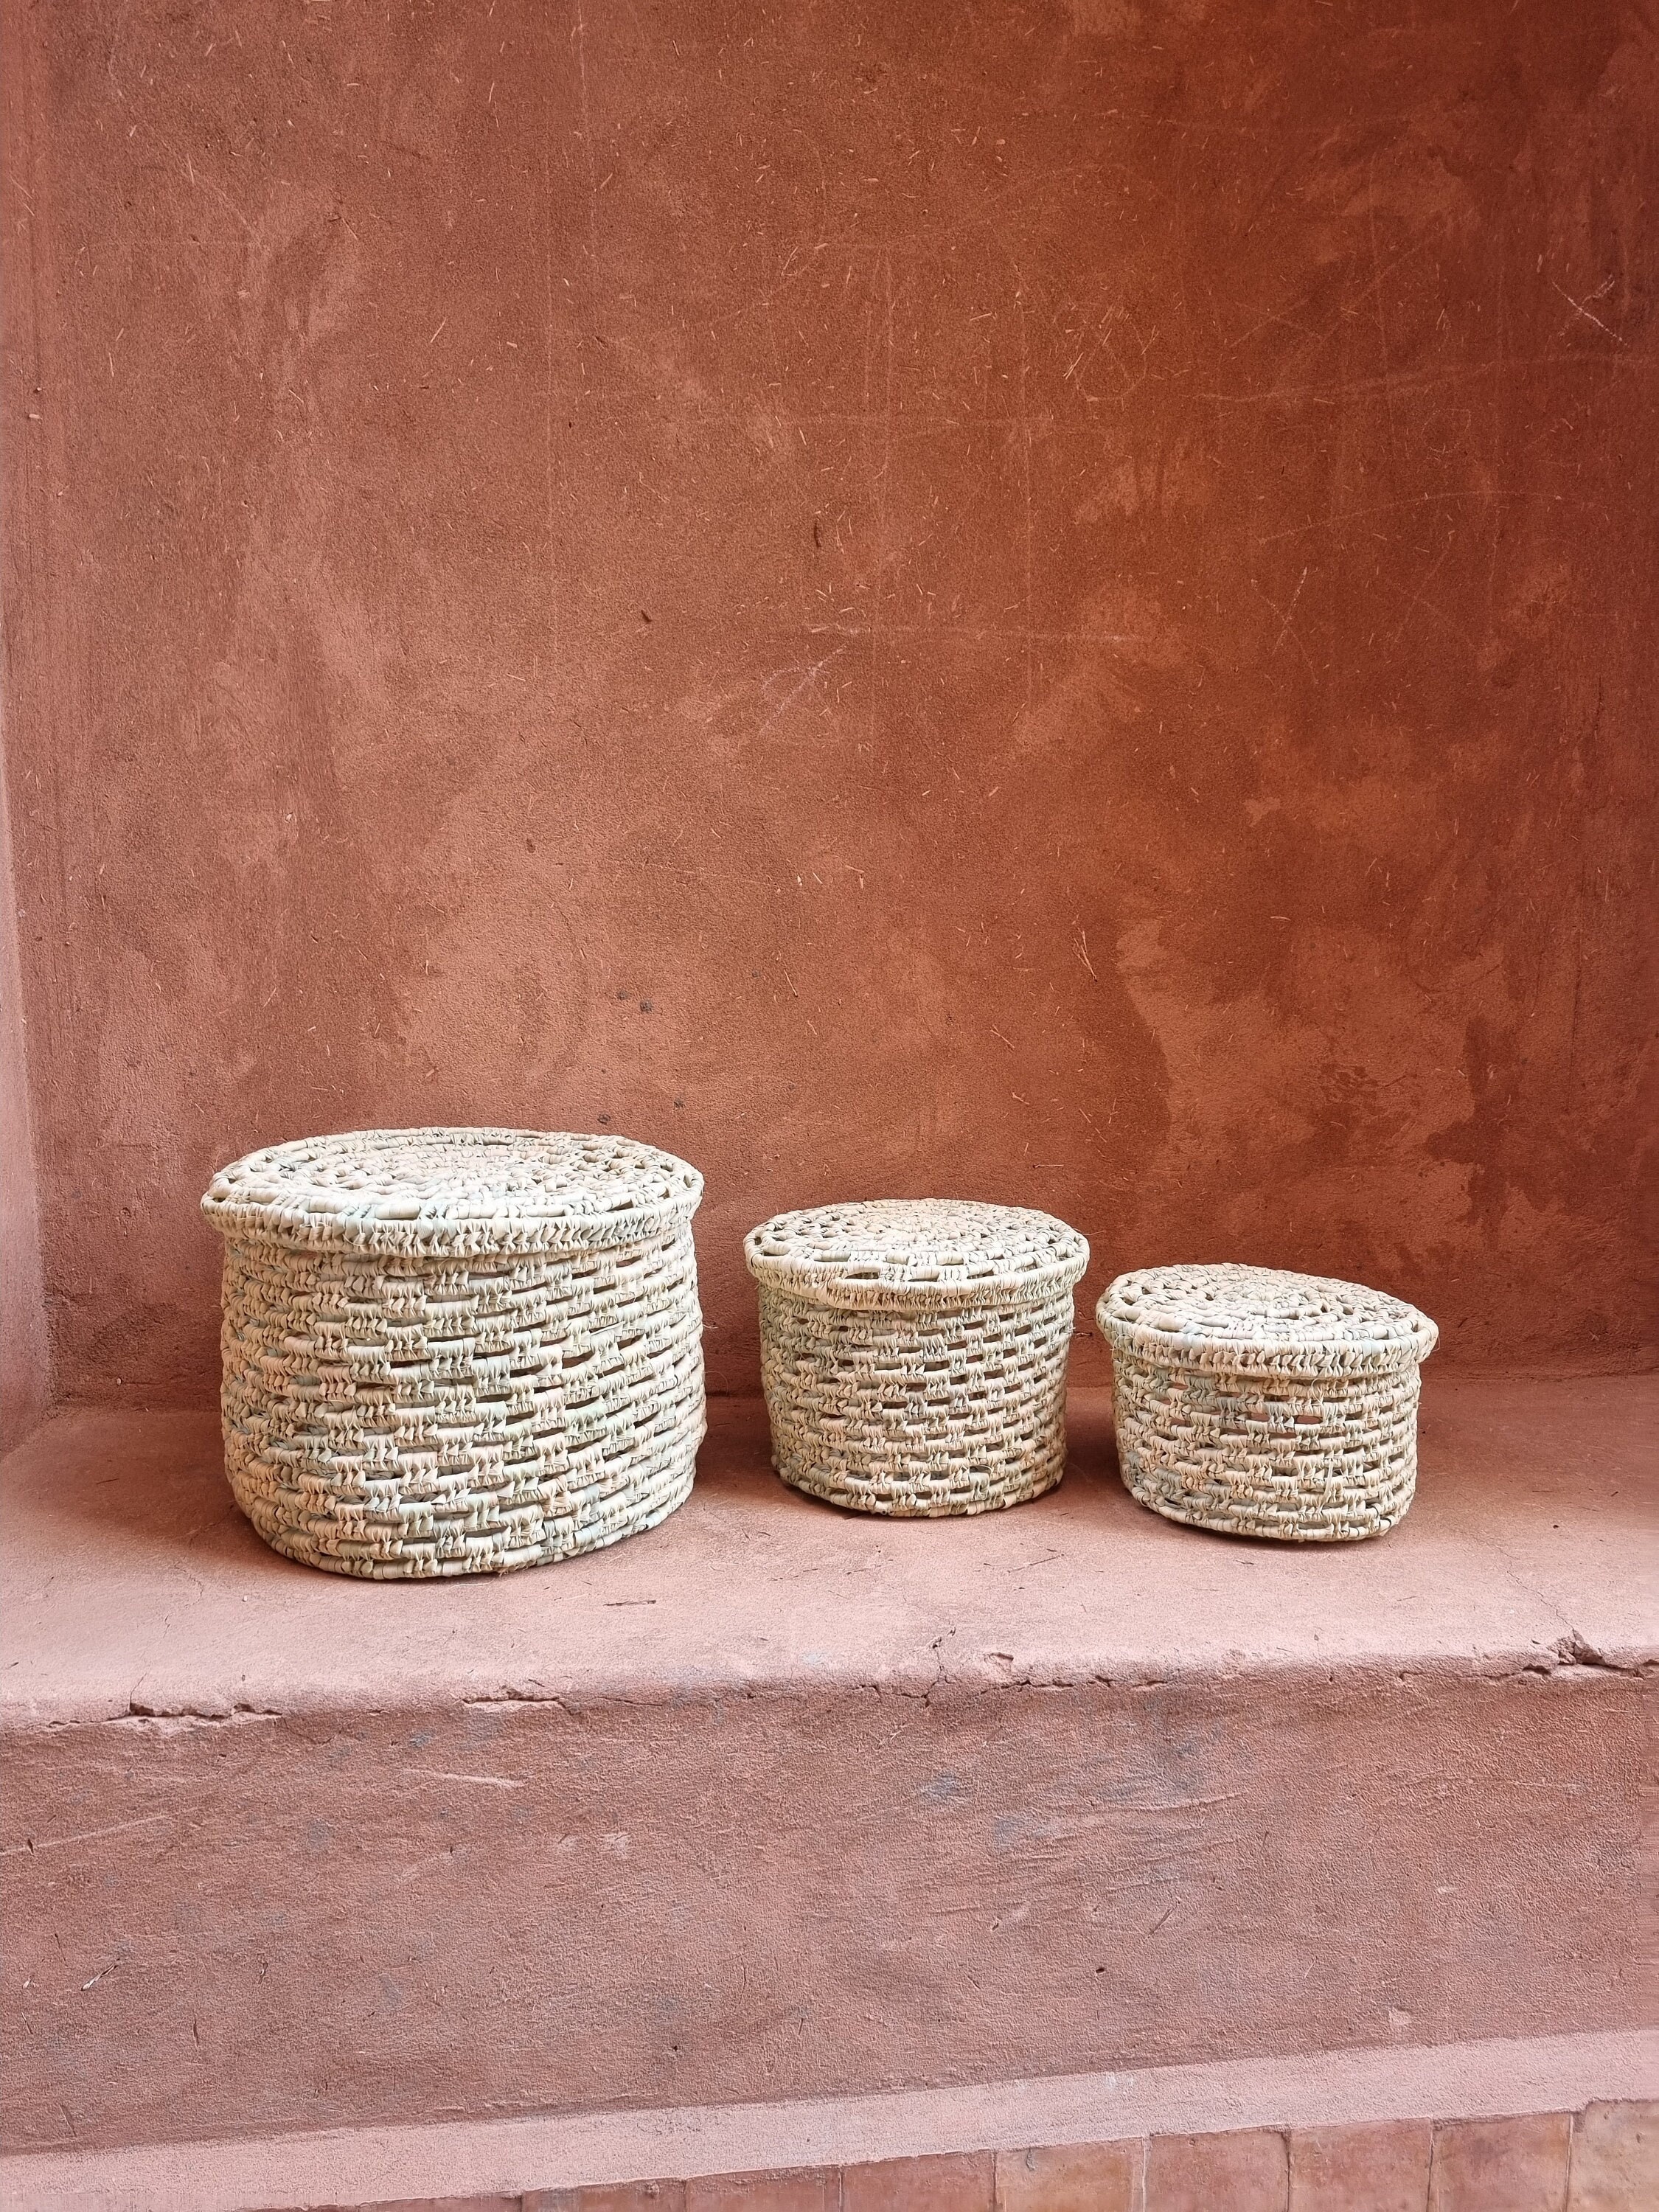 Hot Pot – Roti Bag – Bread Cloth Basket – Home Essentials